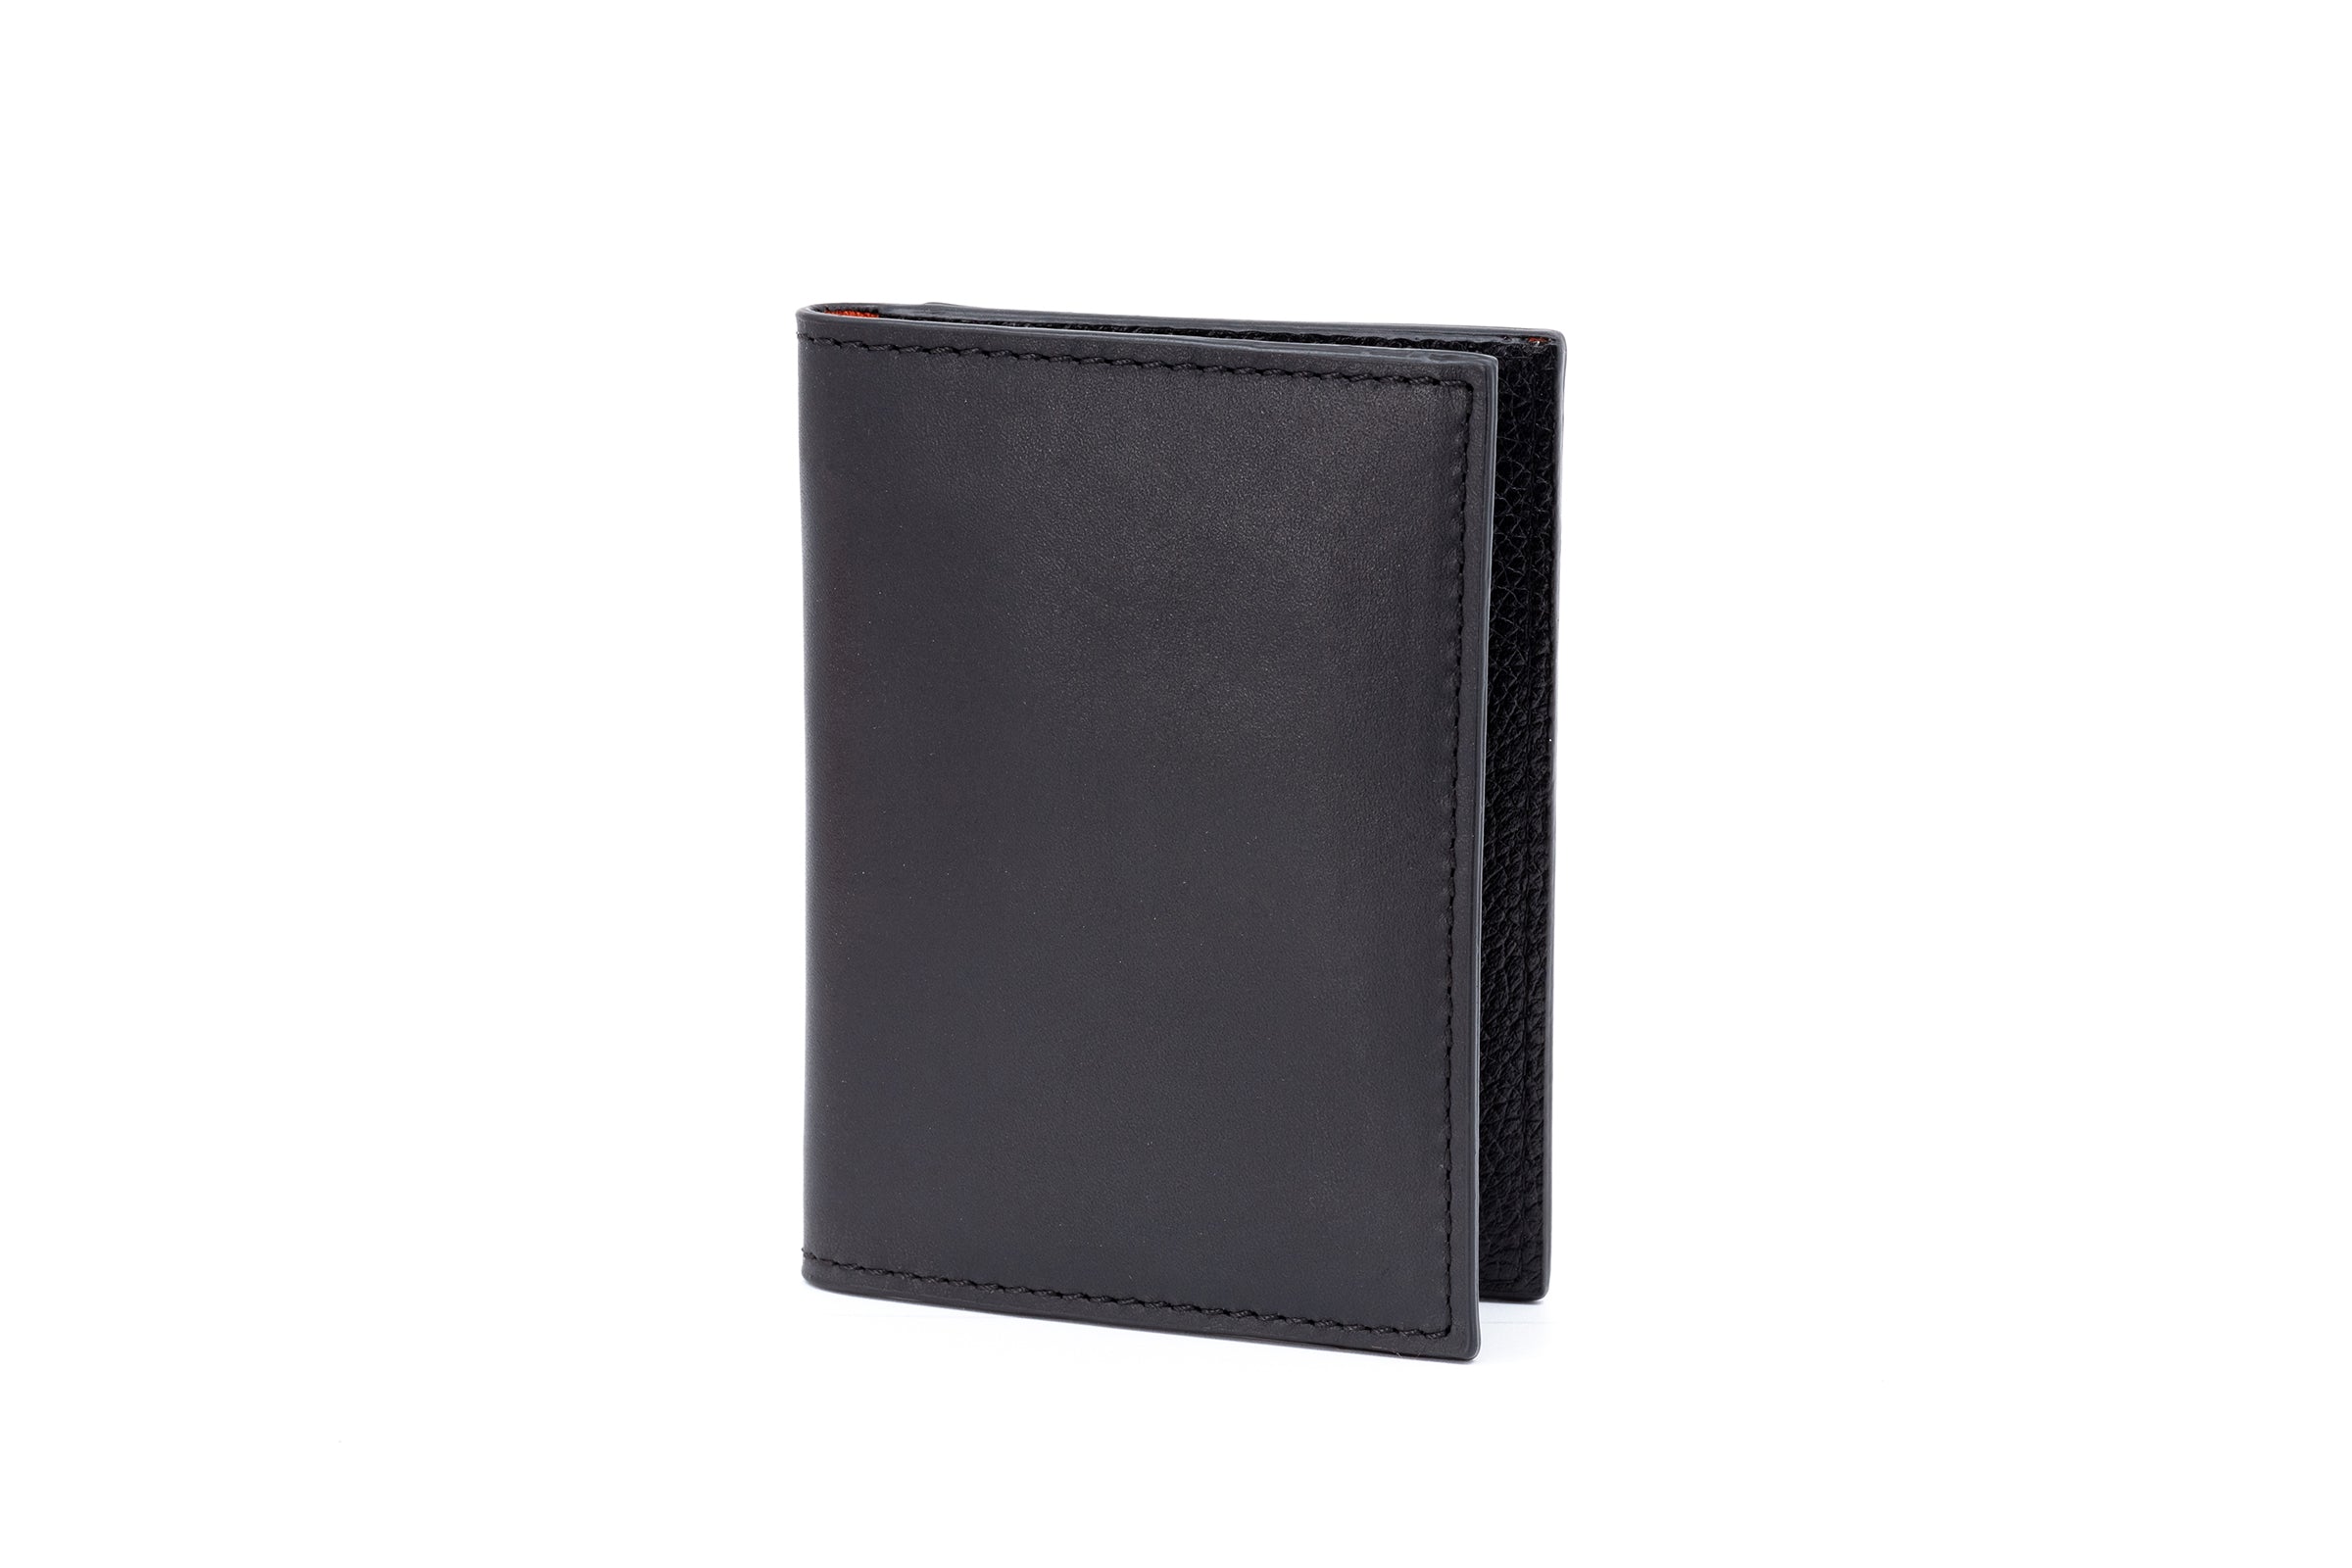 Edward Saddle Leather ID Wallet - Black